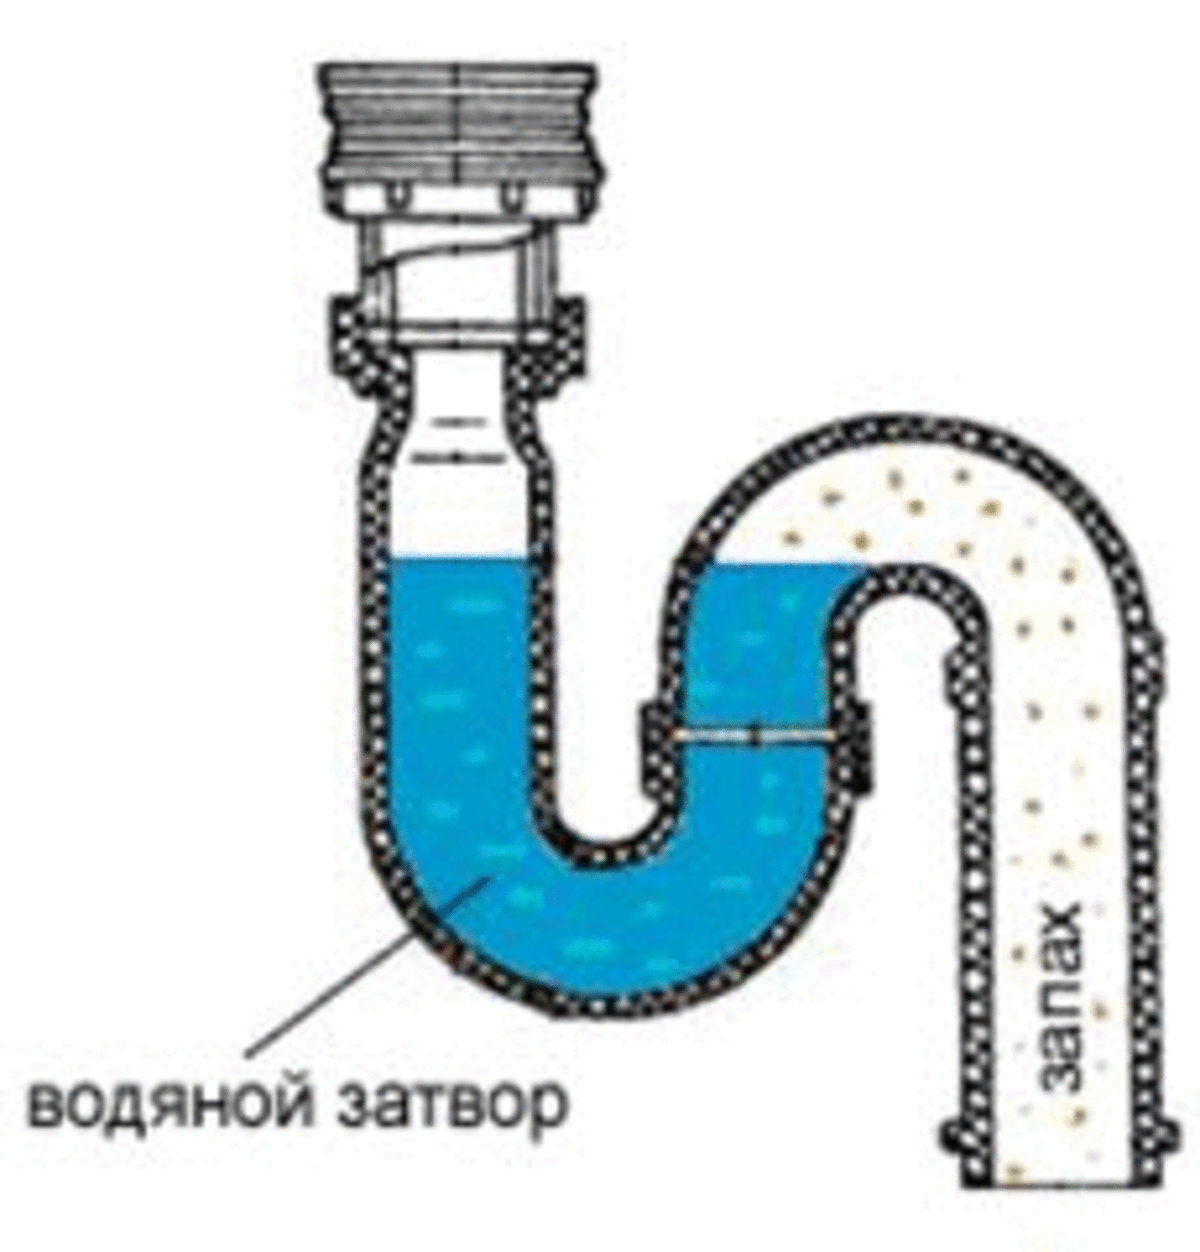 Гидрозатворы для канализации и особенности их работы